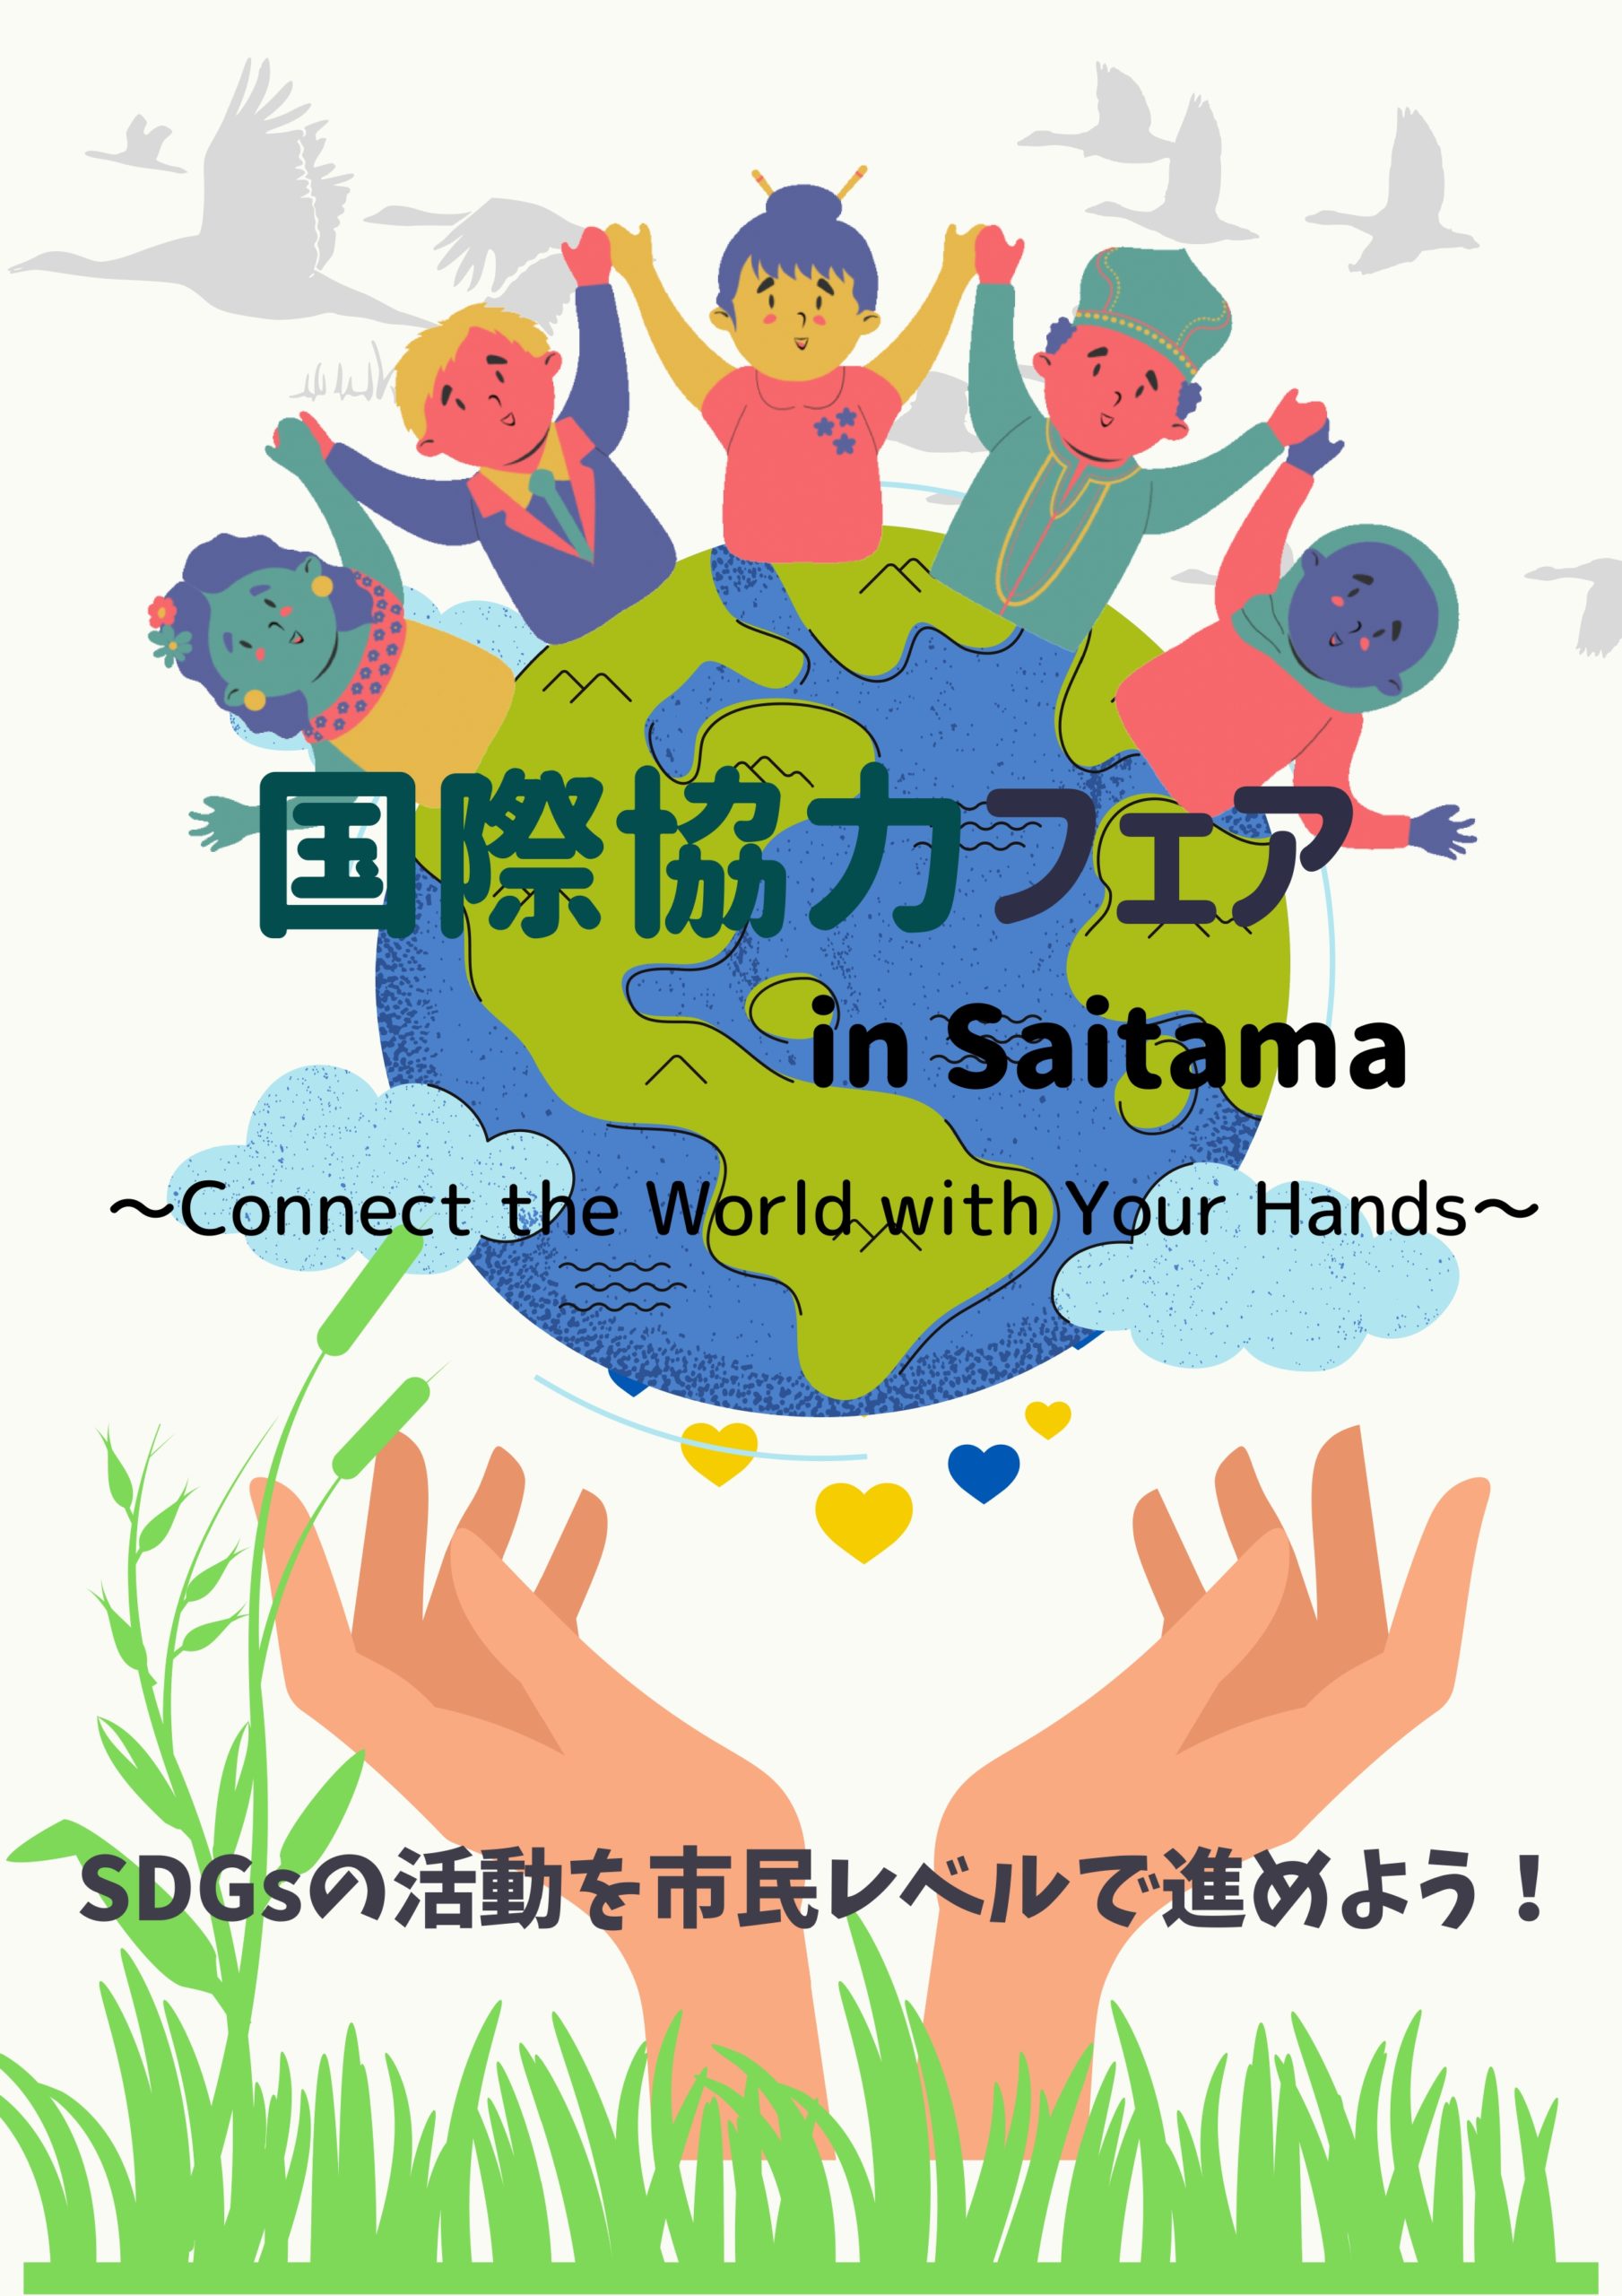 国際協力フェア in saitama 動画のイメージ